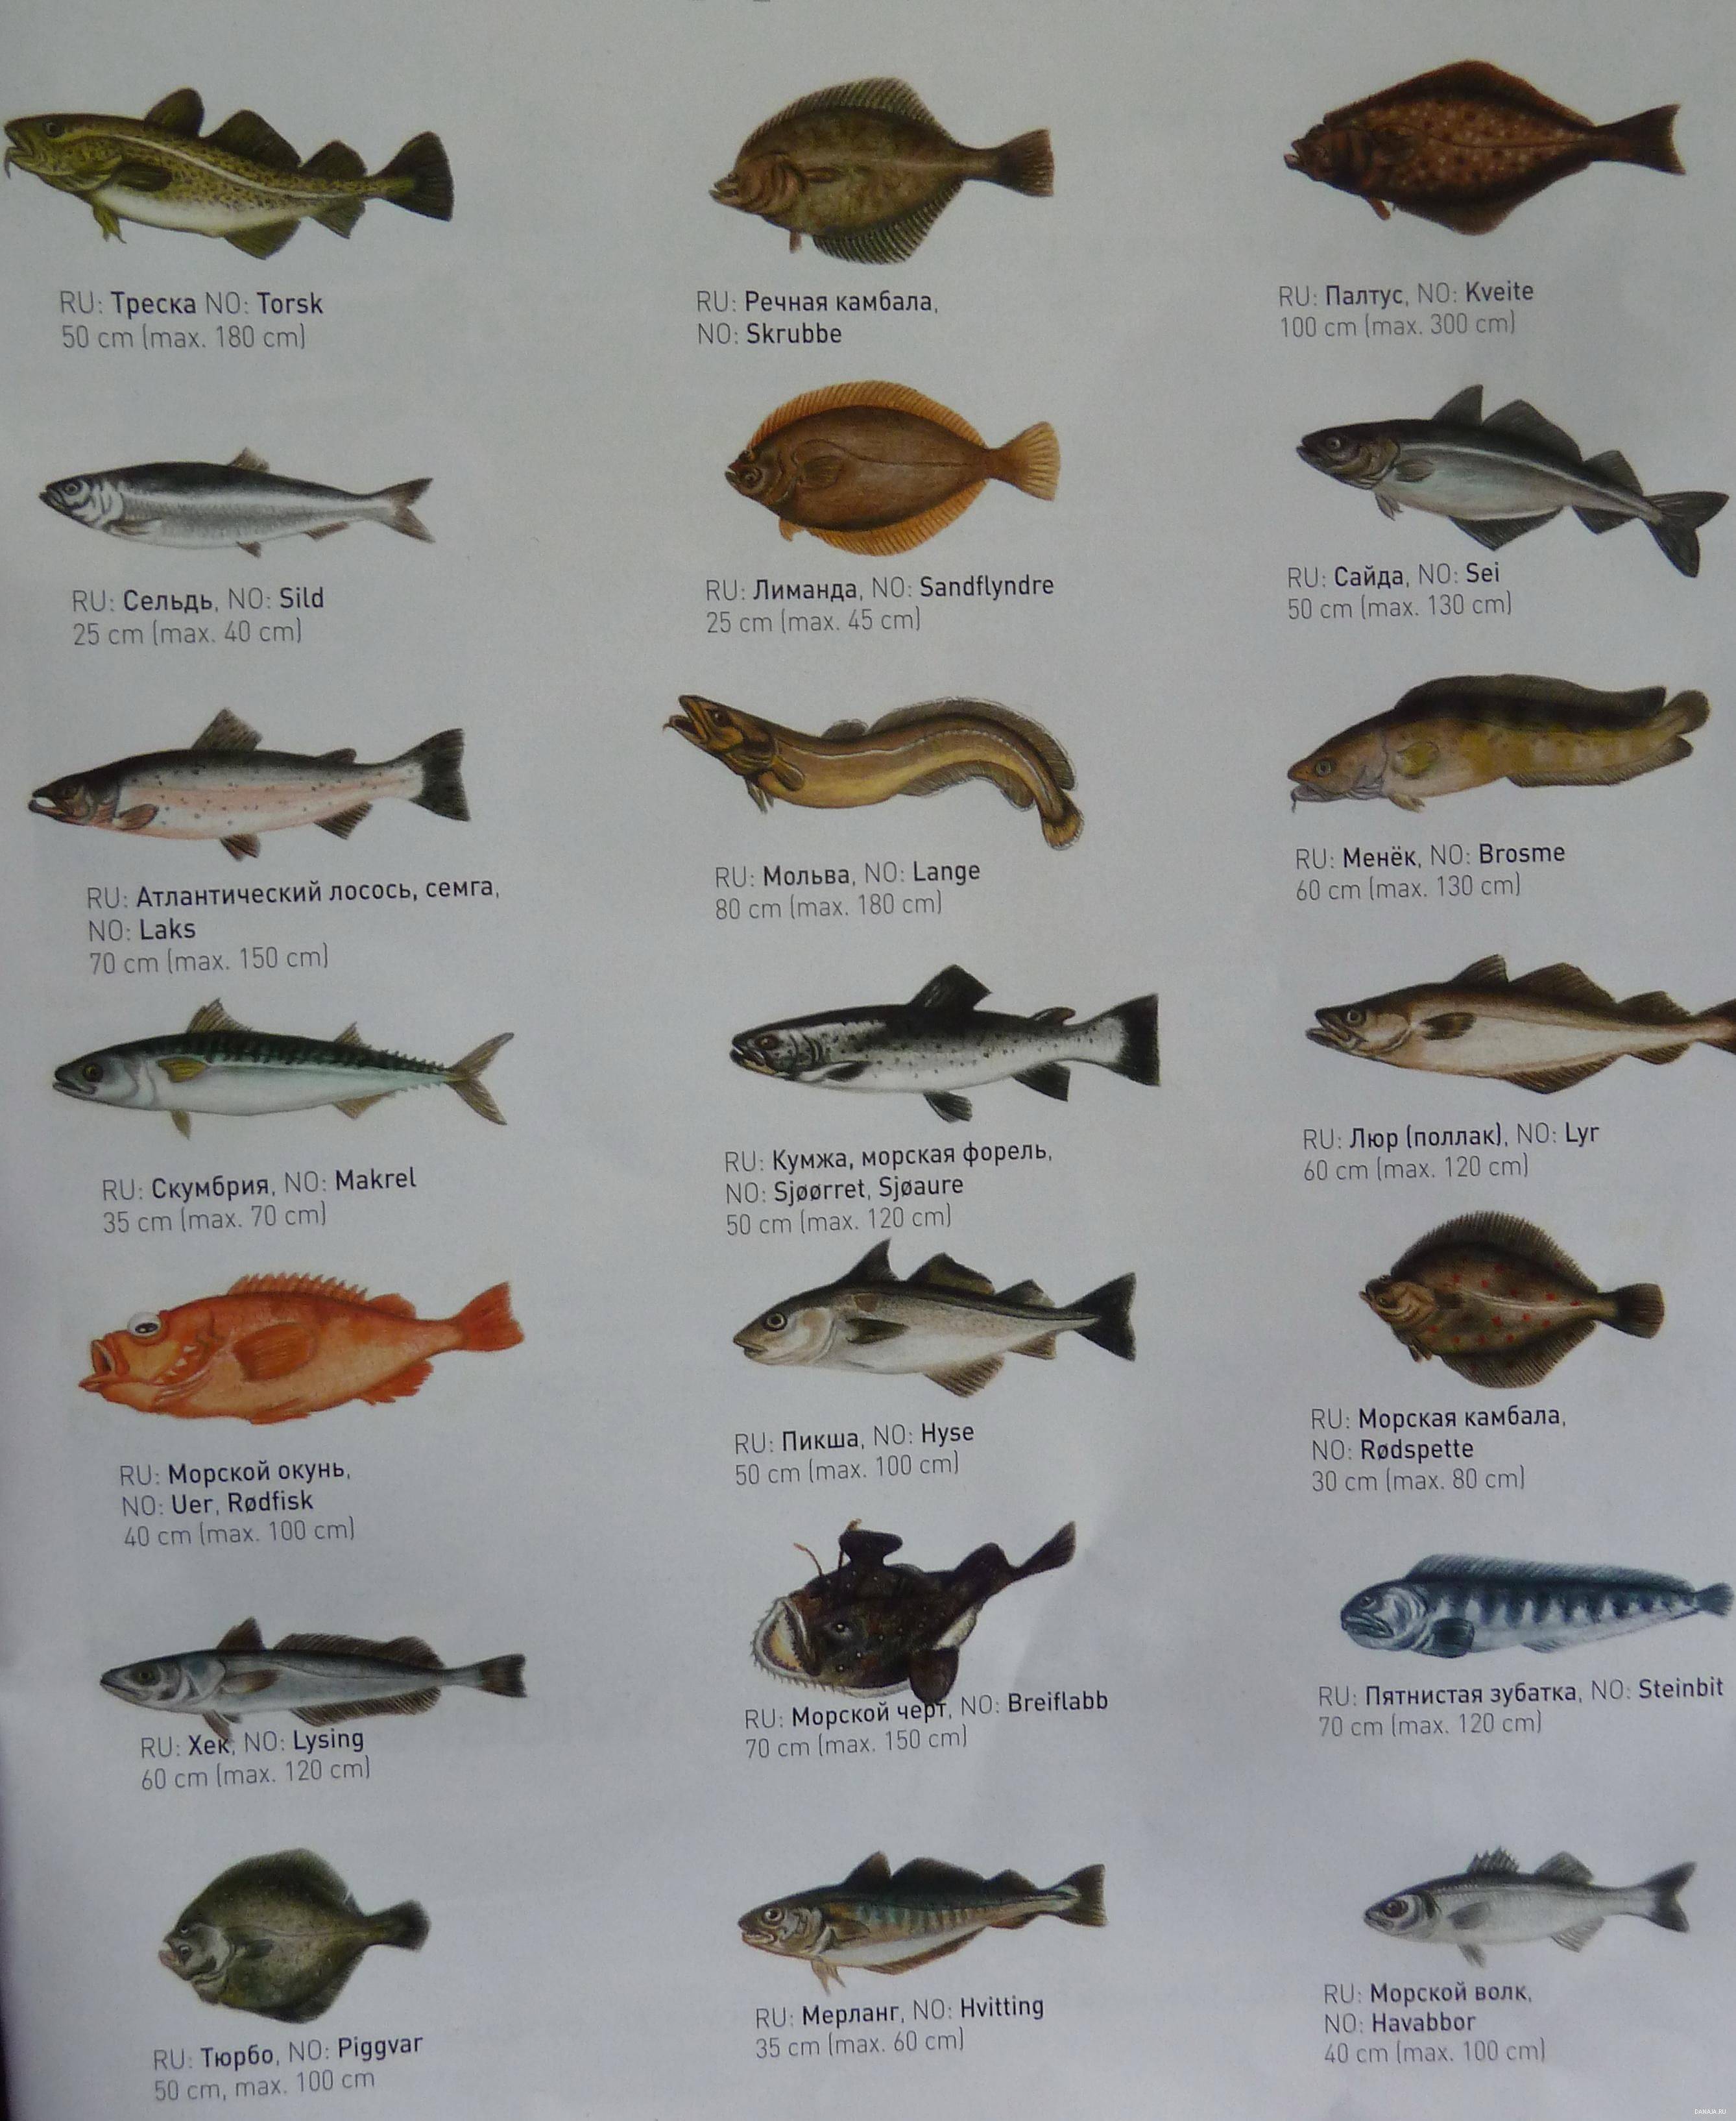 Рыба-заяц: описание и разновидности морского кролика, полезные свойства и вред, рецепты приготовления химеры